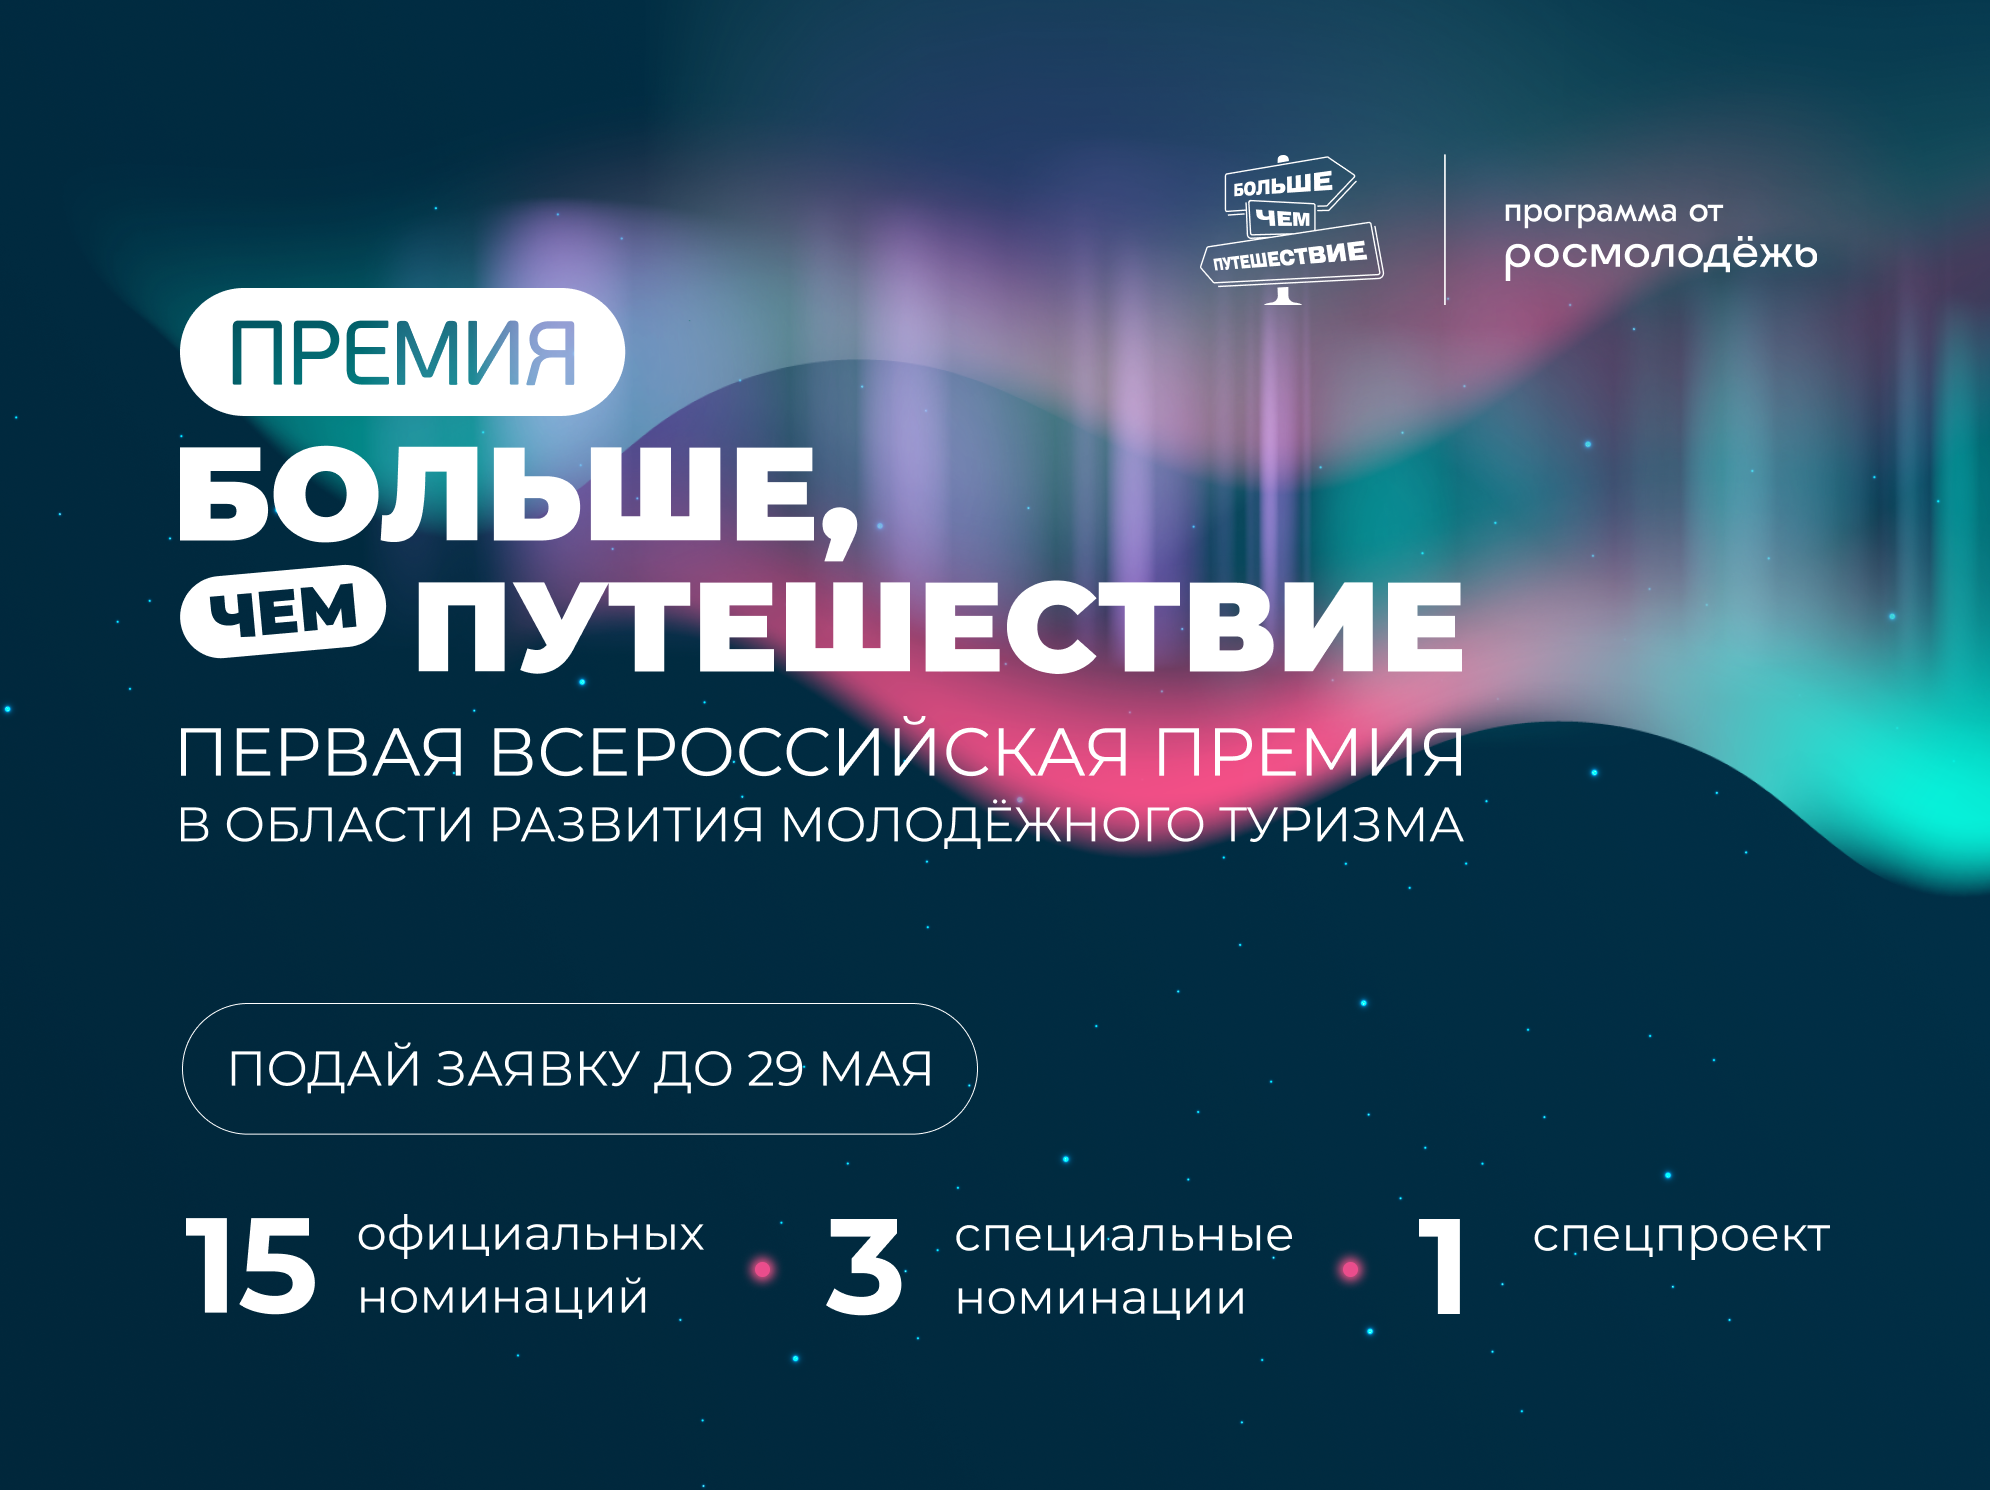 Открыт прием заявок на Первую всероссийскую премию в области развития молодежного туризма «Больше, чем путешествие»